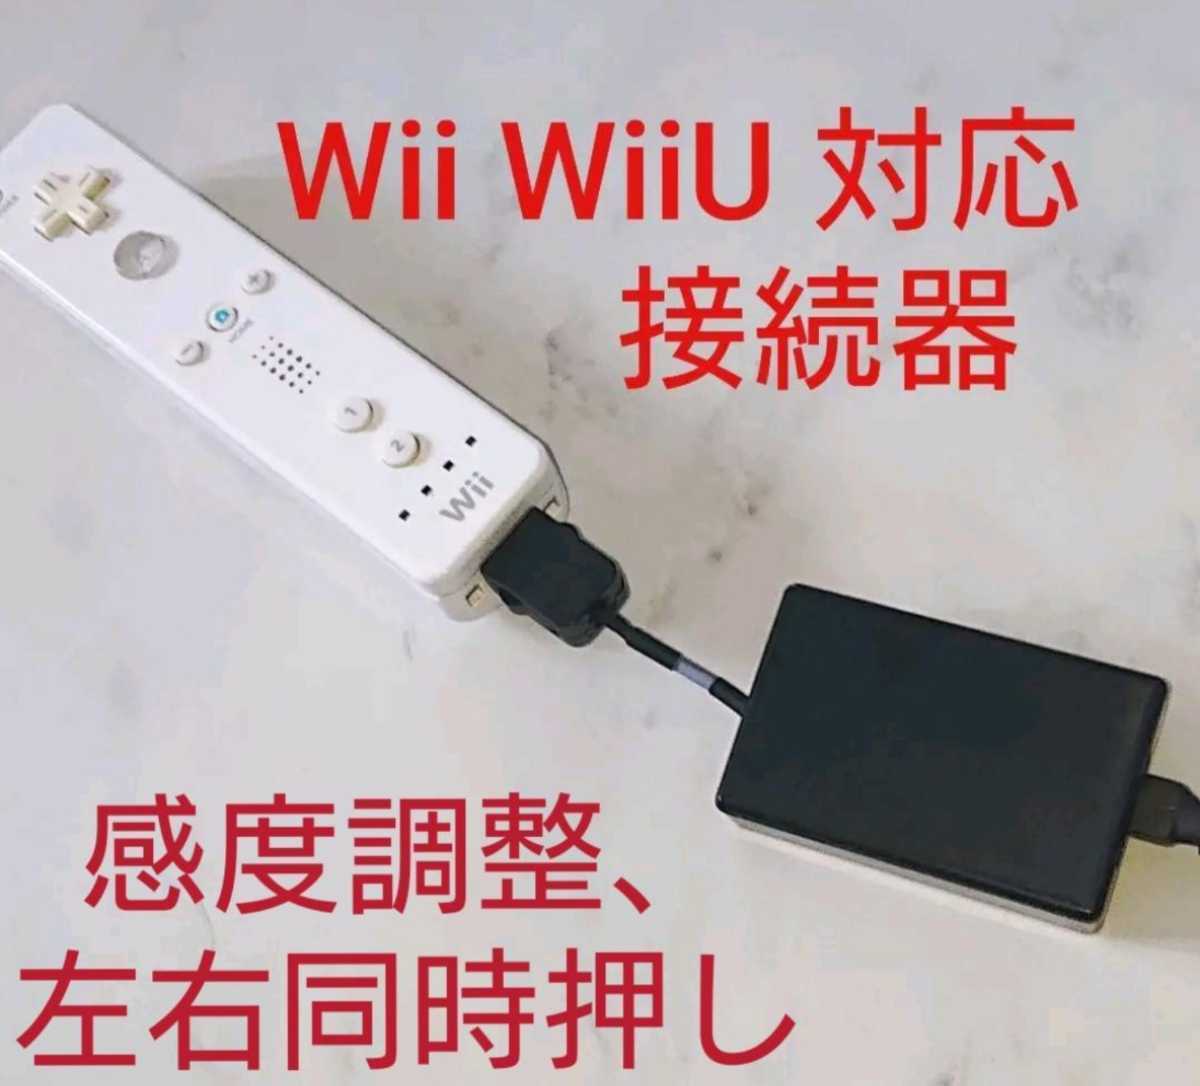 アーケード太鼓の達人の基盤をWii Wii Uに繋ぐ接続器 左右同時押しと感度調整OK E-BOX 変換器おうち太鼓やtaiko force lv5に